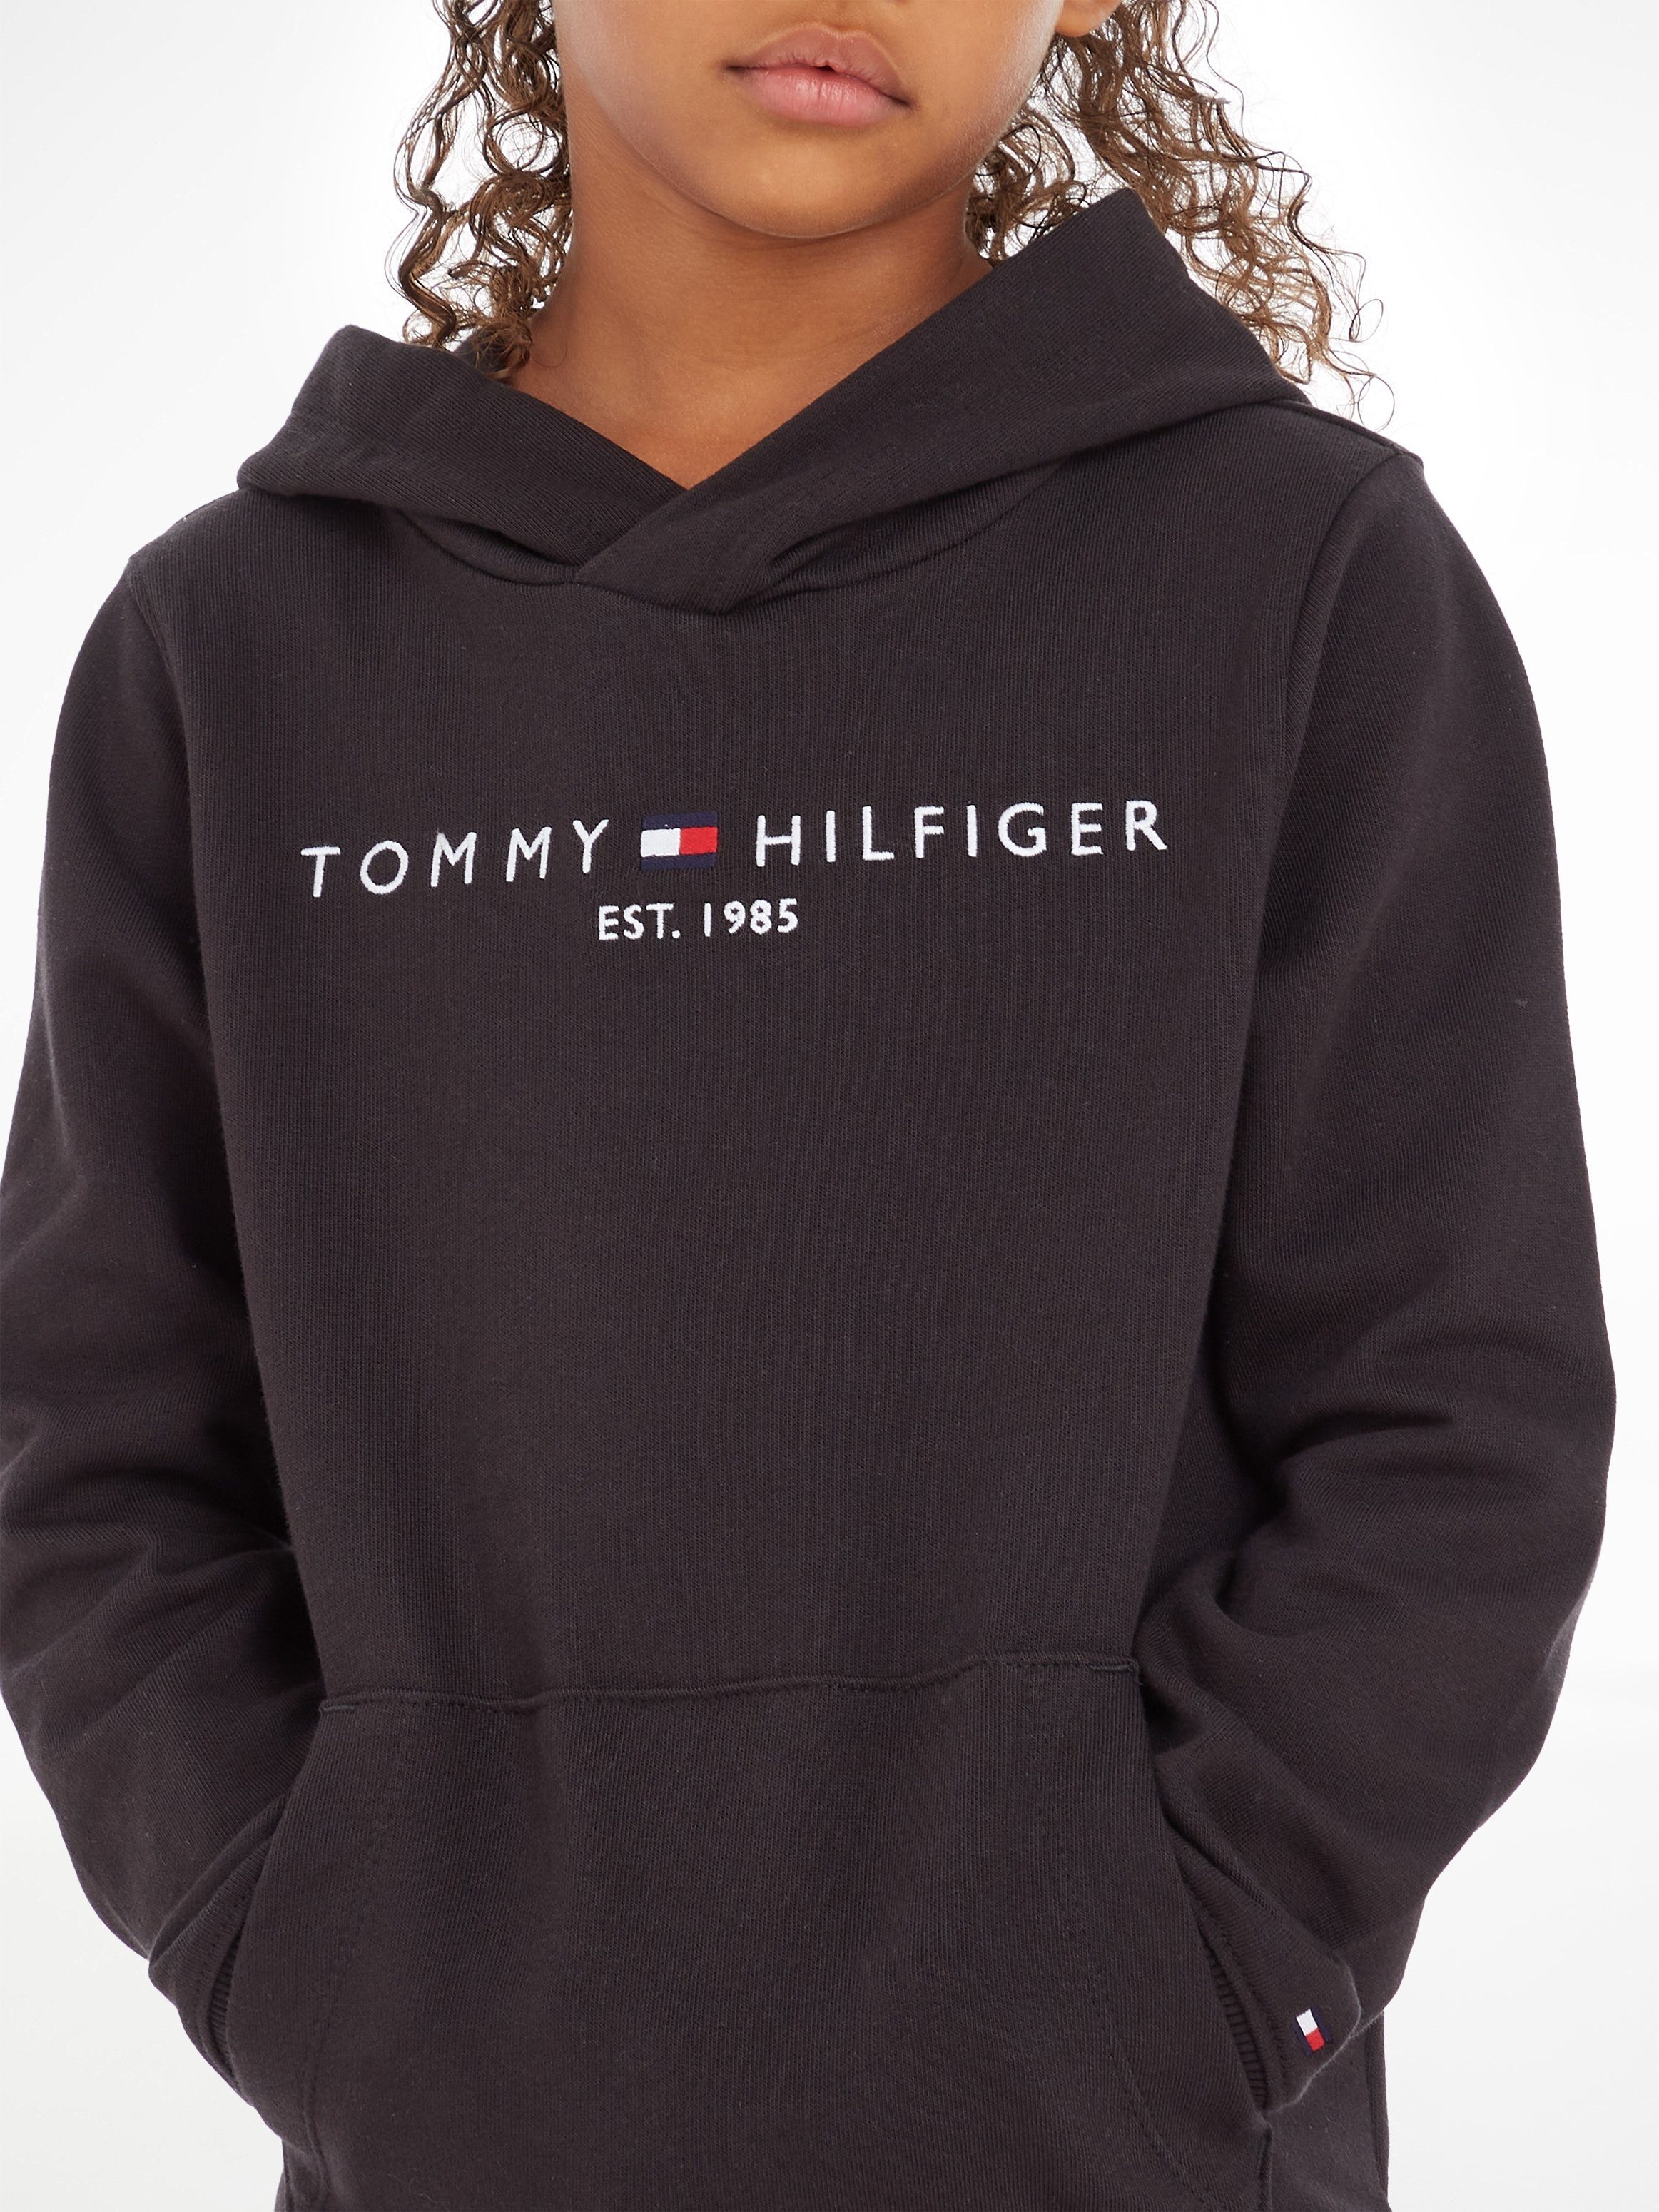 Tommy Hilfiger Kapuzensweatshirt ESSENTIAL HOODIE Jungen MiniMe,für Kids Junior Kinder Mädchen und